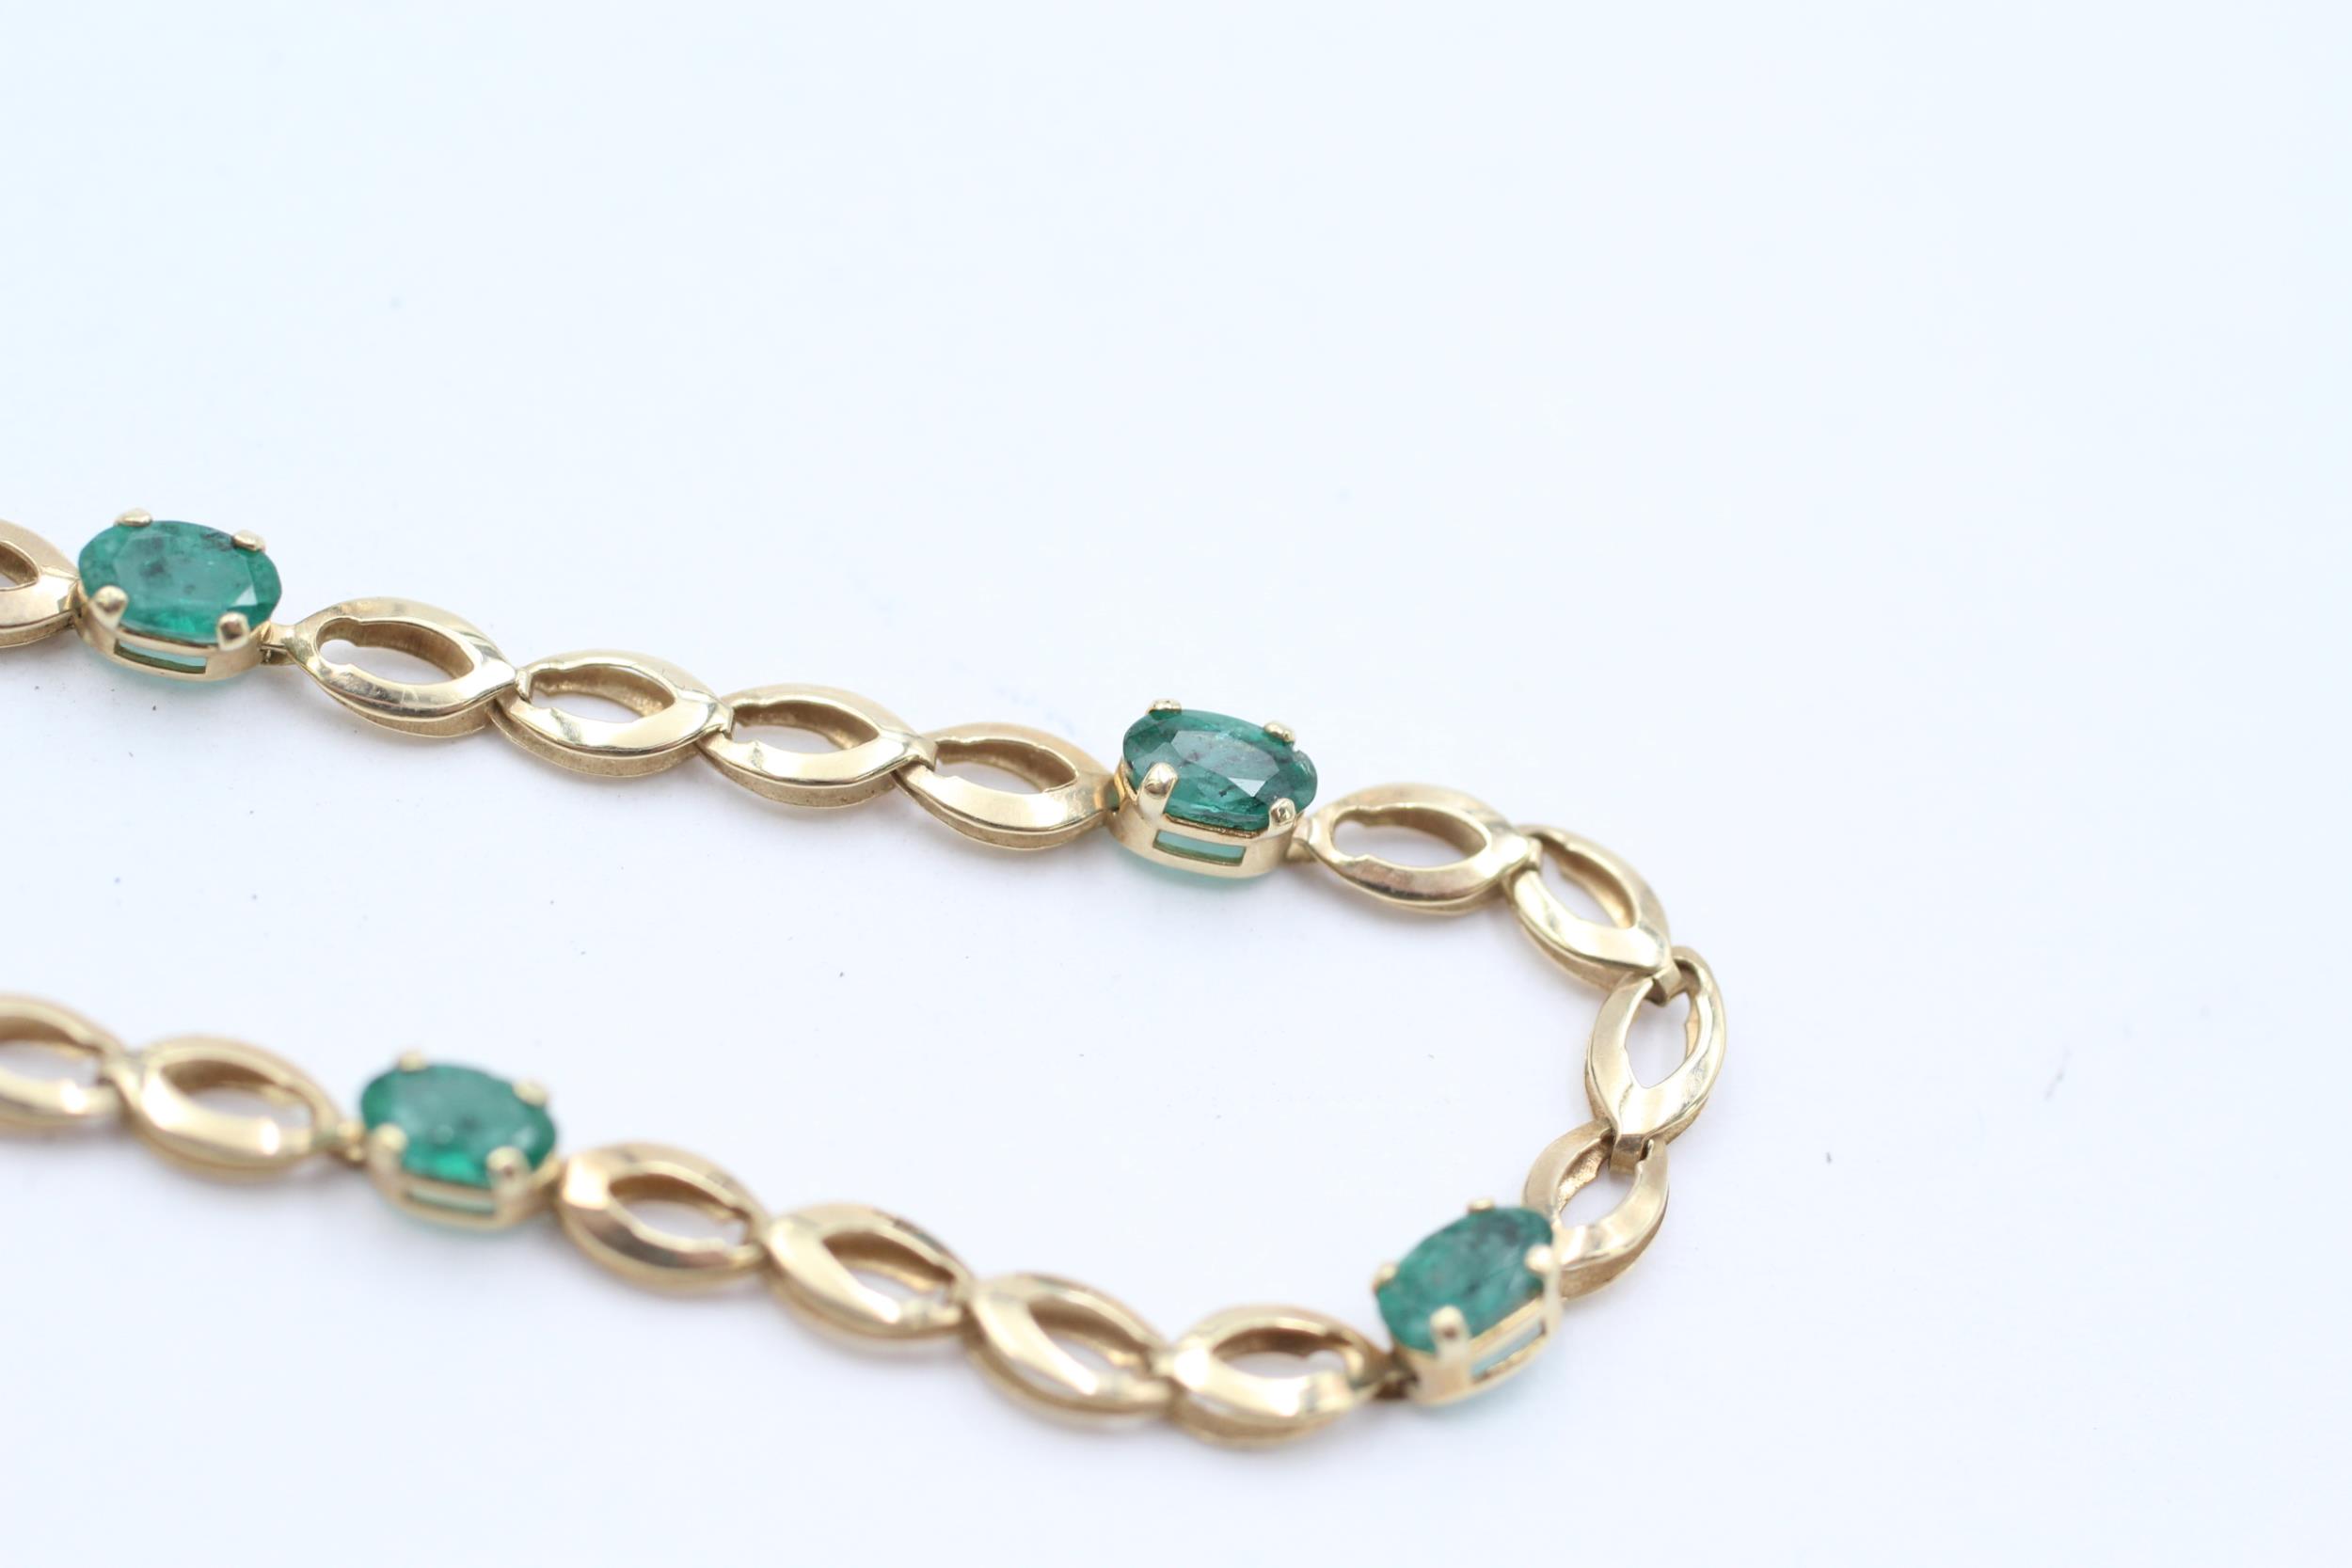 10ct gold emerald bracelet - 2.2 g - Image 4 of 5